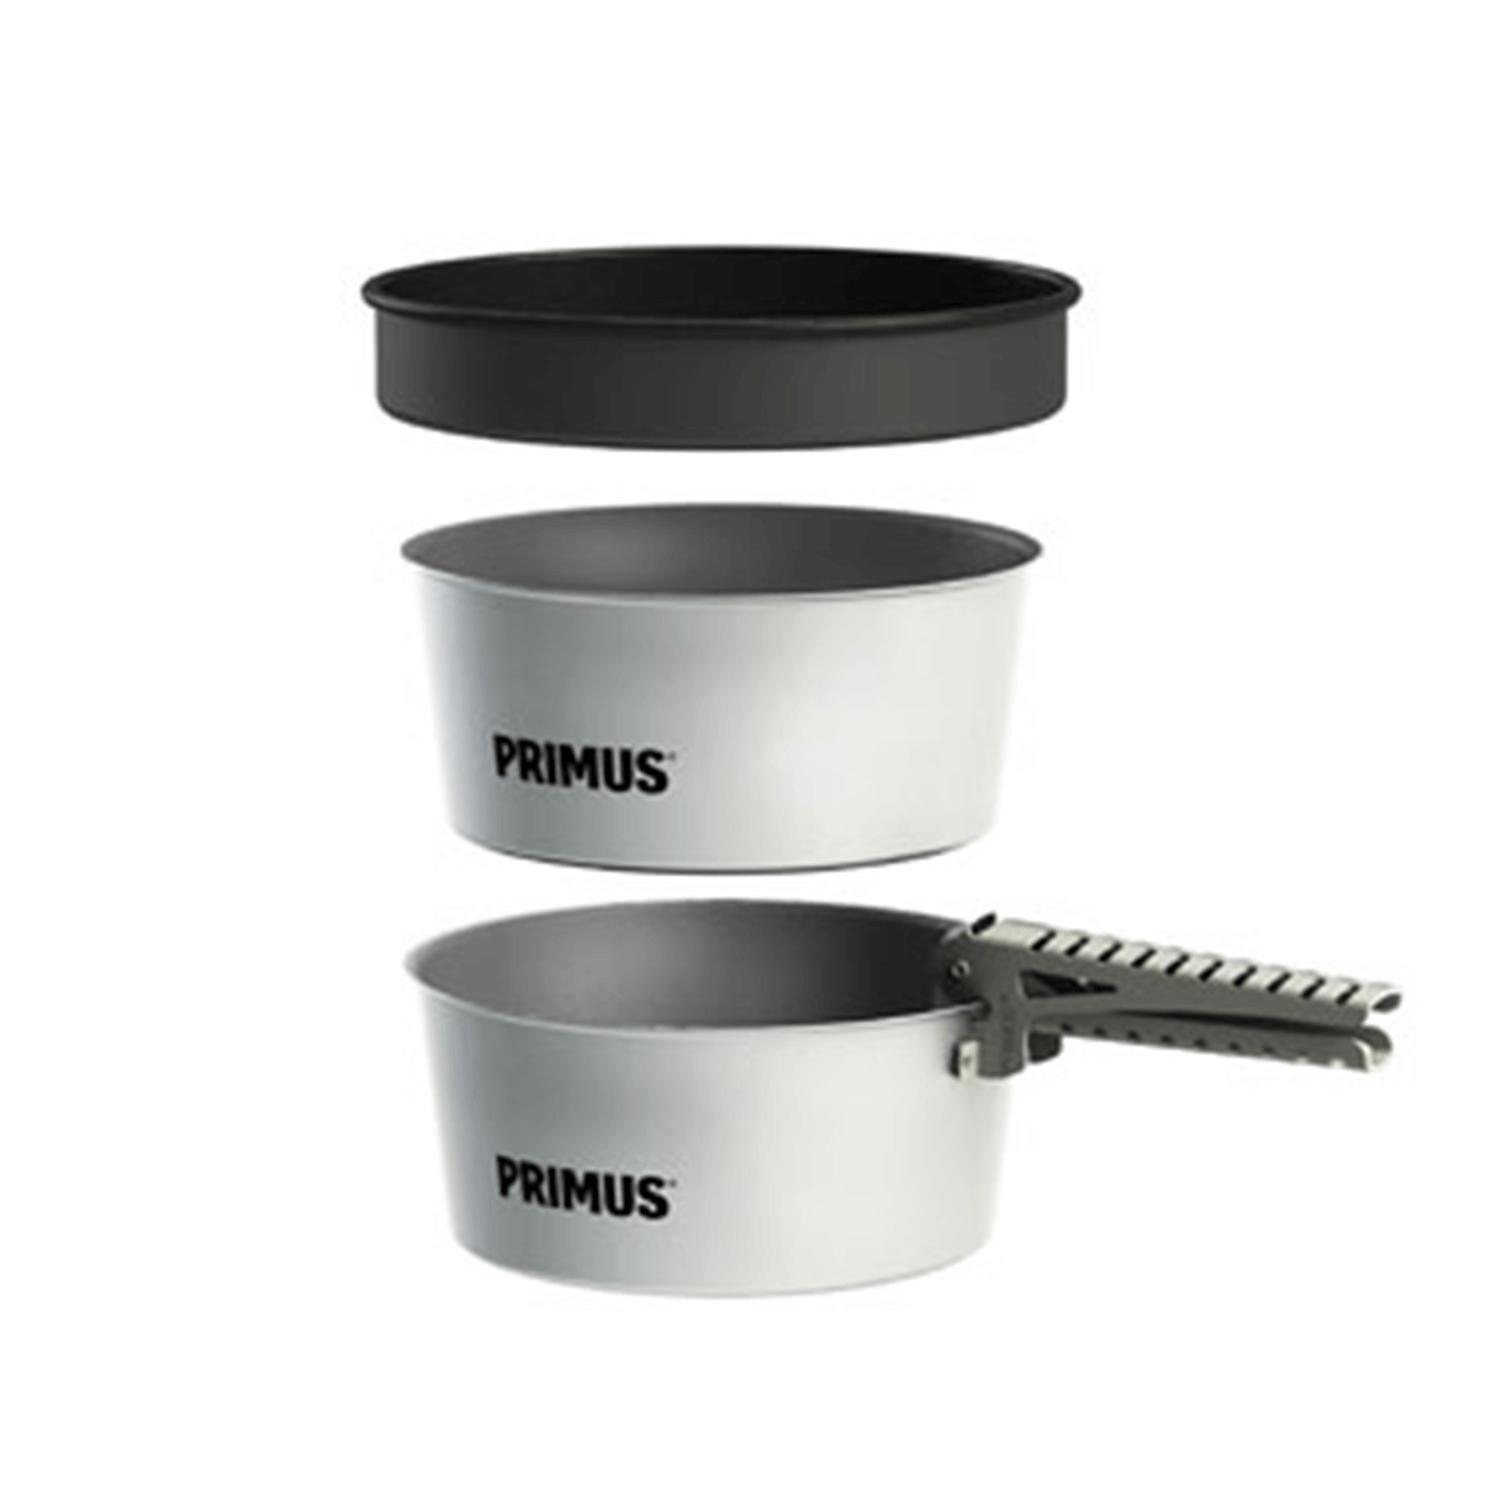 Primus Potset Essentials 2x1,3L - Outdoor Kitchen